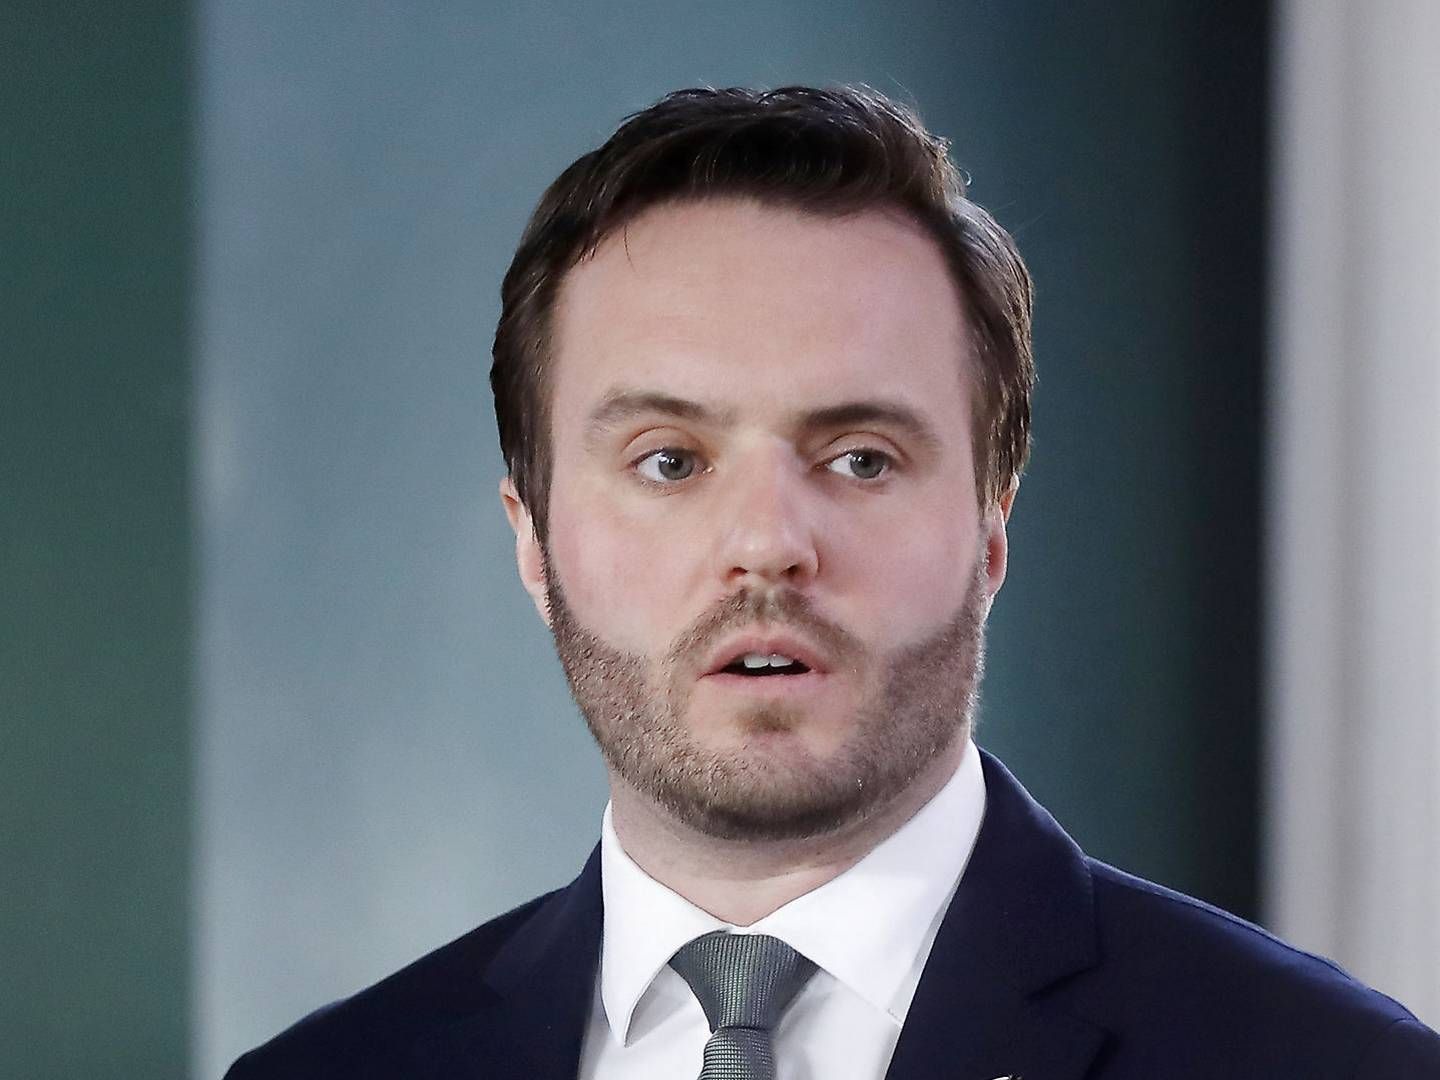 Erhvervsminister Simon Kollerup (S) fører for tiden valgkamp som kandidat til Folketinget for Socialdemokratiet i Nordjylland.